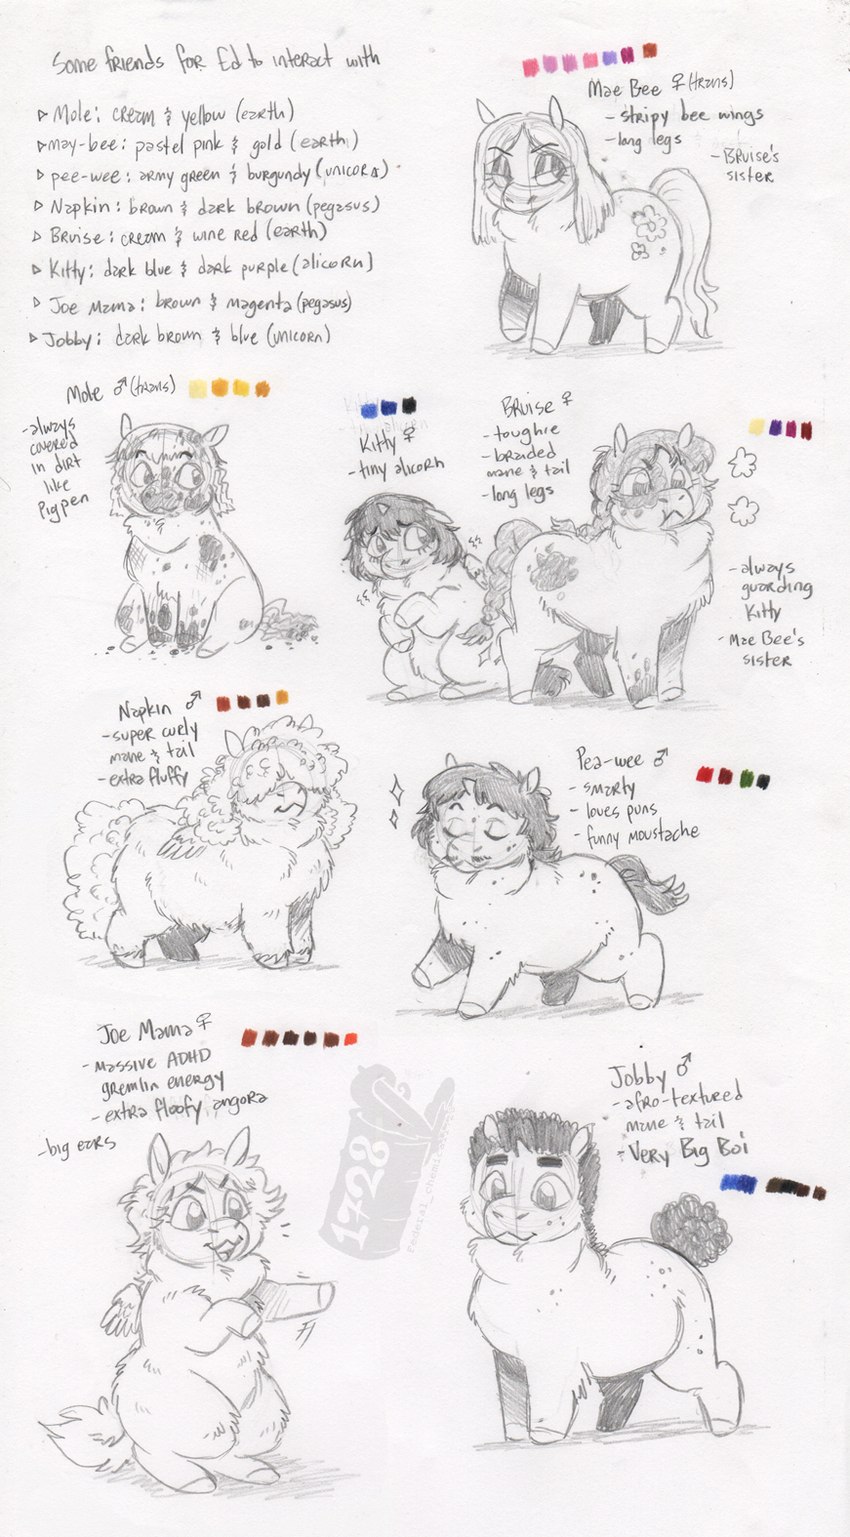 joe mama, bruise, napkin, jobby, kitty, and etc (fluffy pony and etc) created by ed mortis